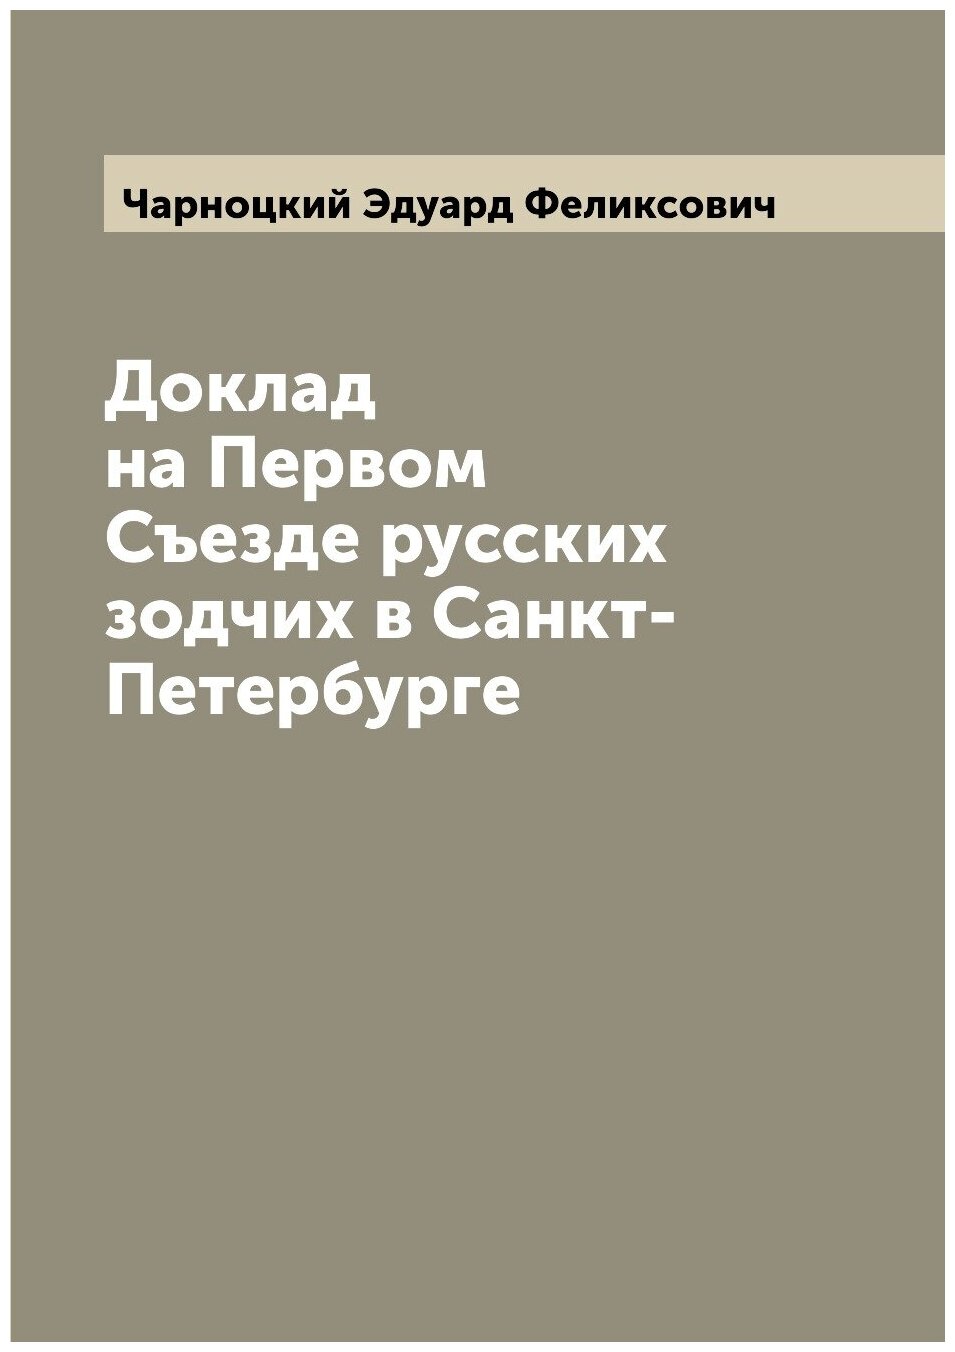 Доклад на Первом Съезде русских зодчих в Санкт-Петербурге